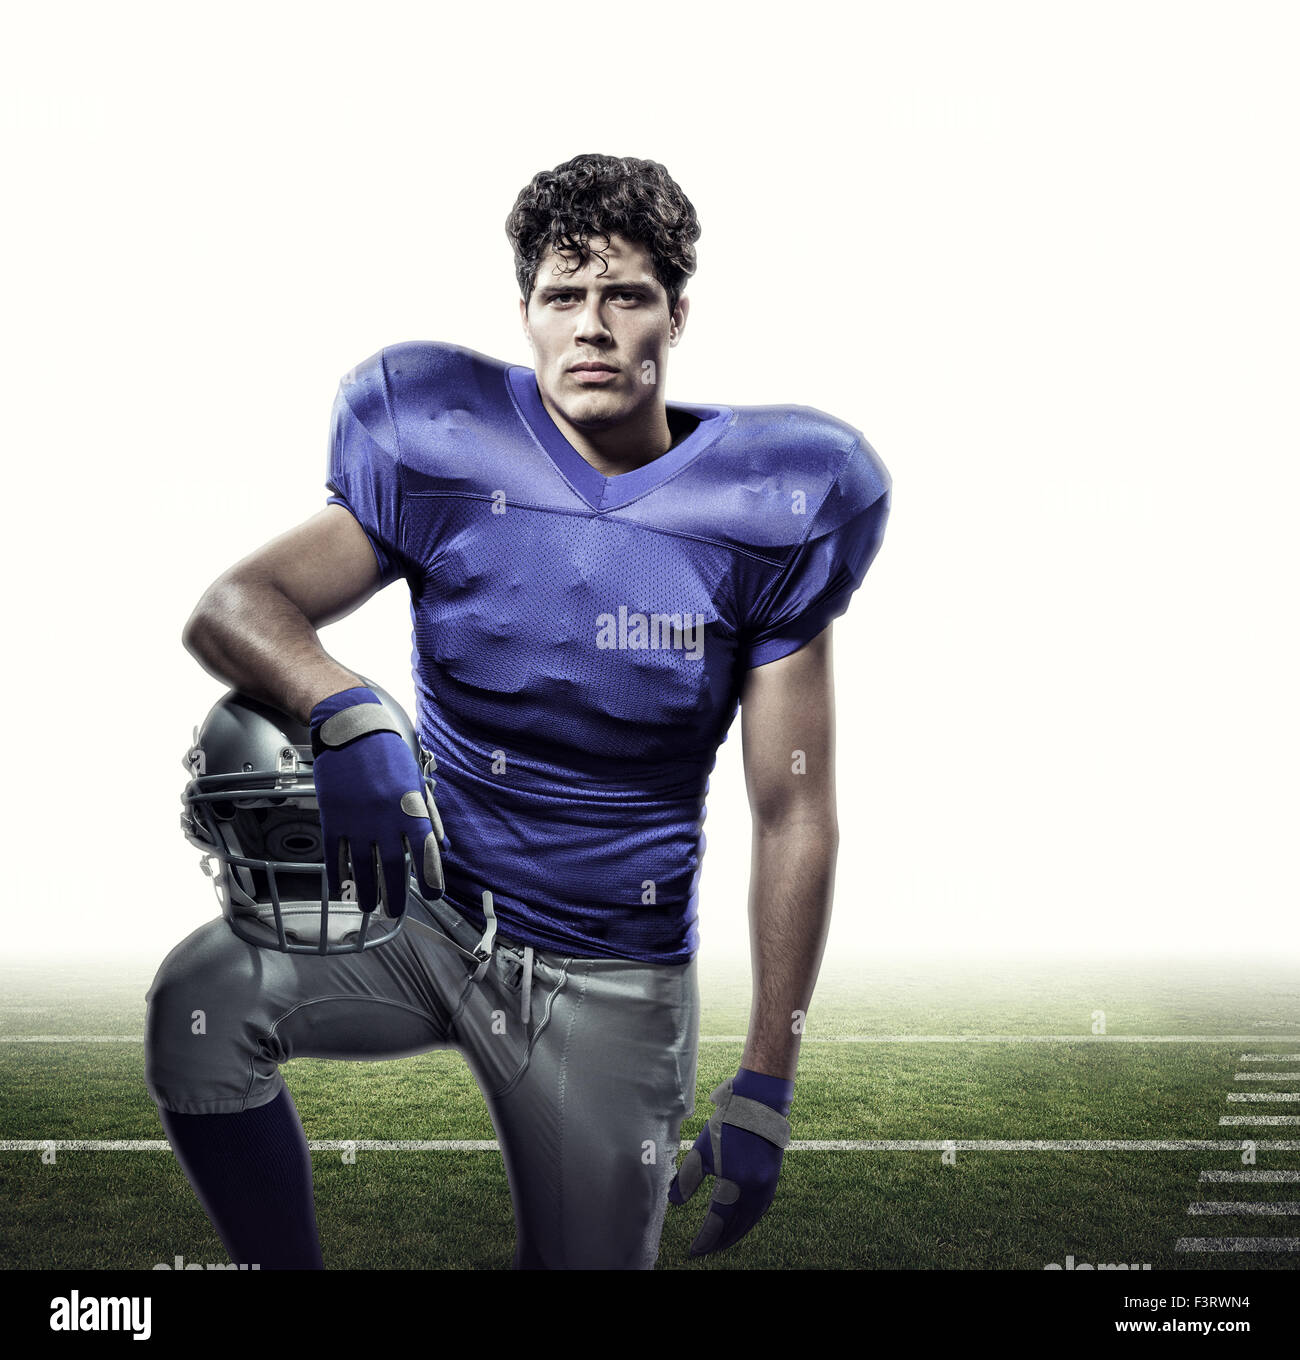 Immagine composita del ritratto di determinato giocatore di football americano con mano sul casco Foto Stock